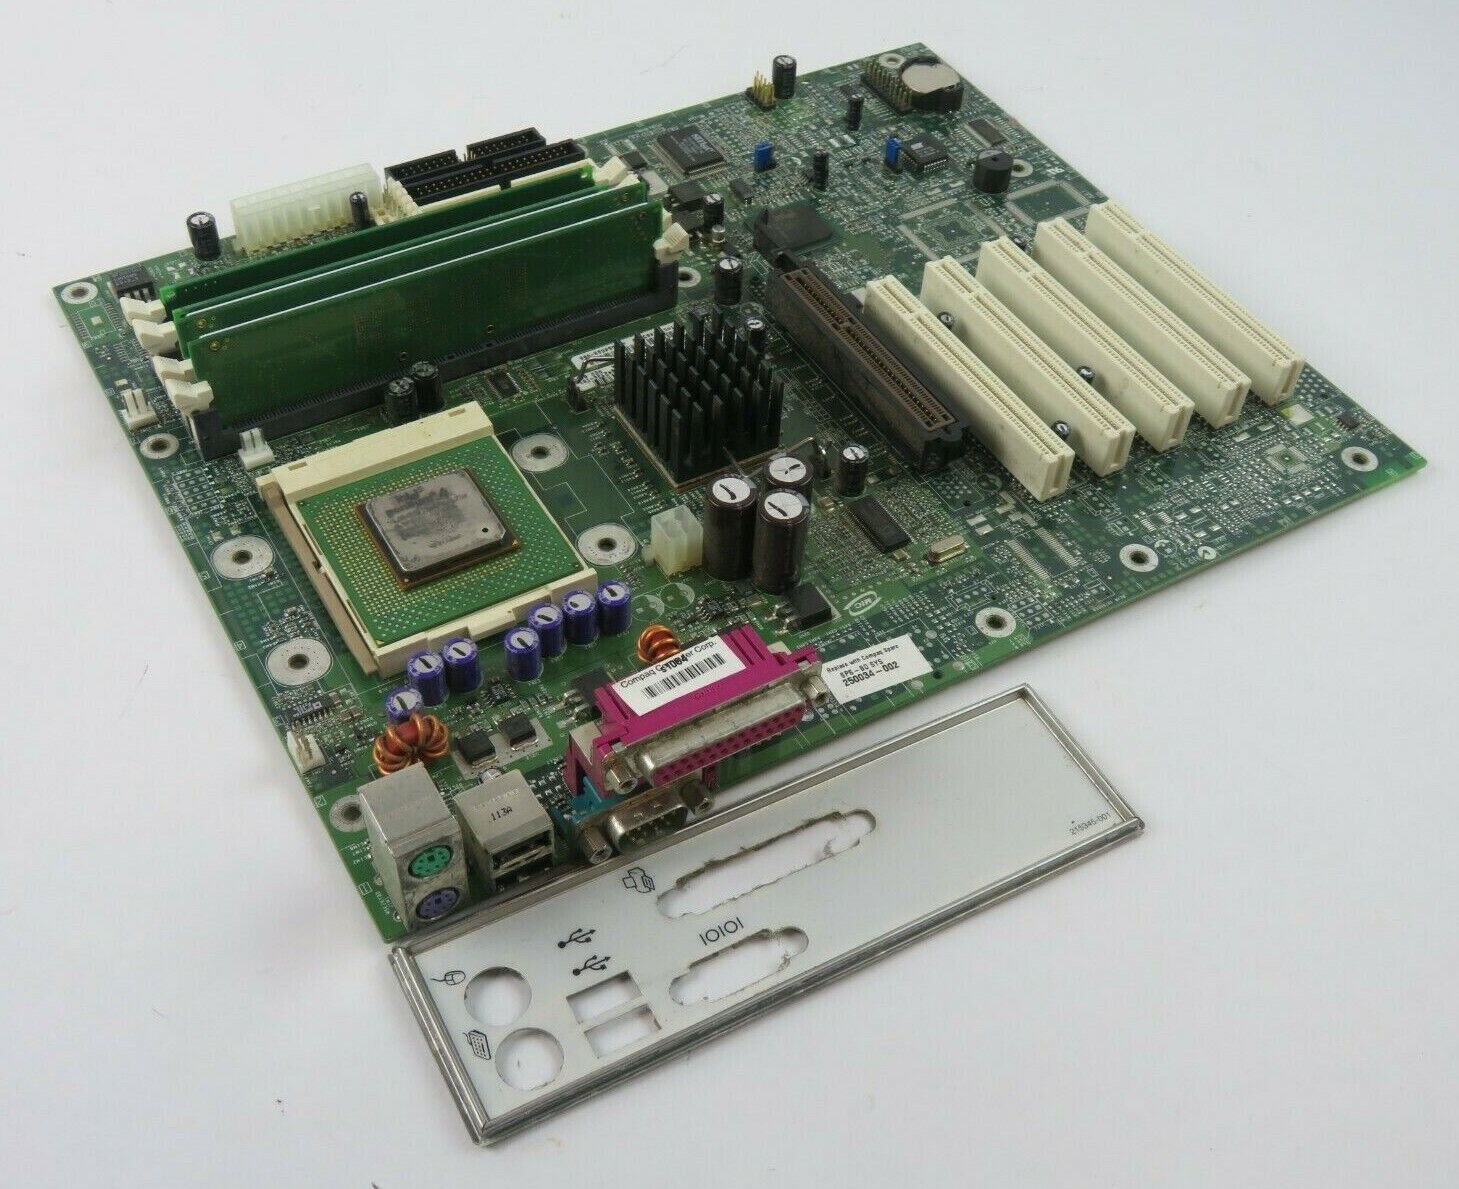 Compaq Intel A60568-900 Socket 423 Motherboard w/ Pentium 4 1.3GHz & 128MB RAM